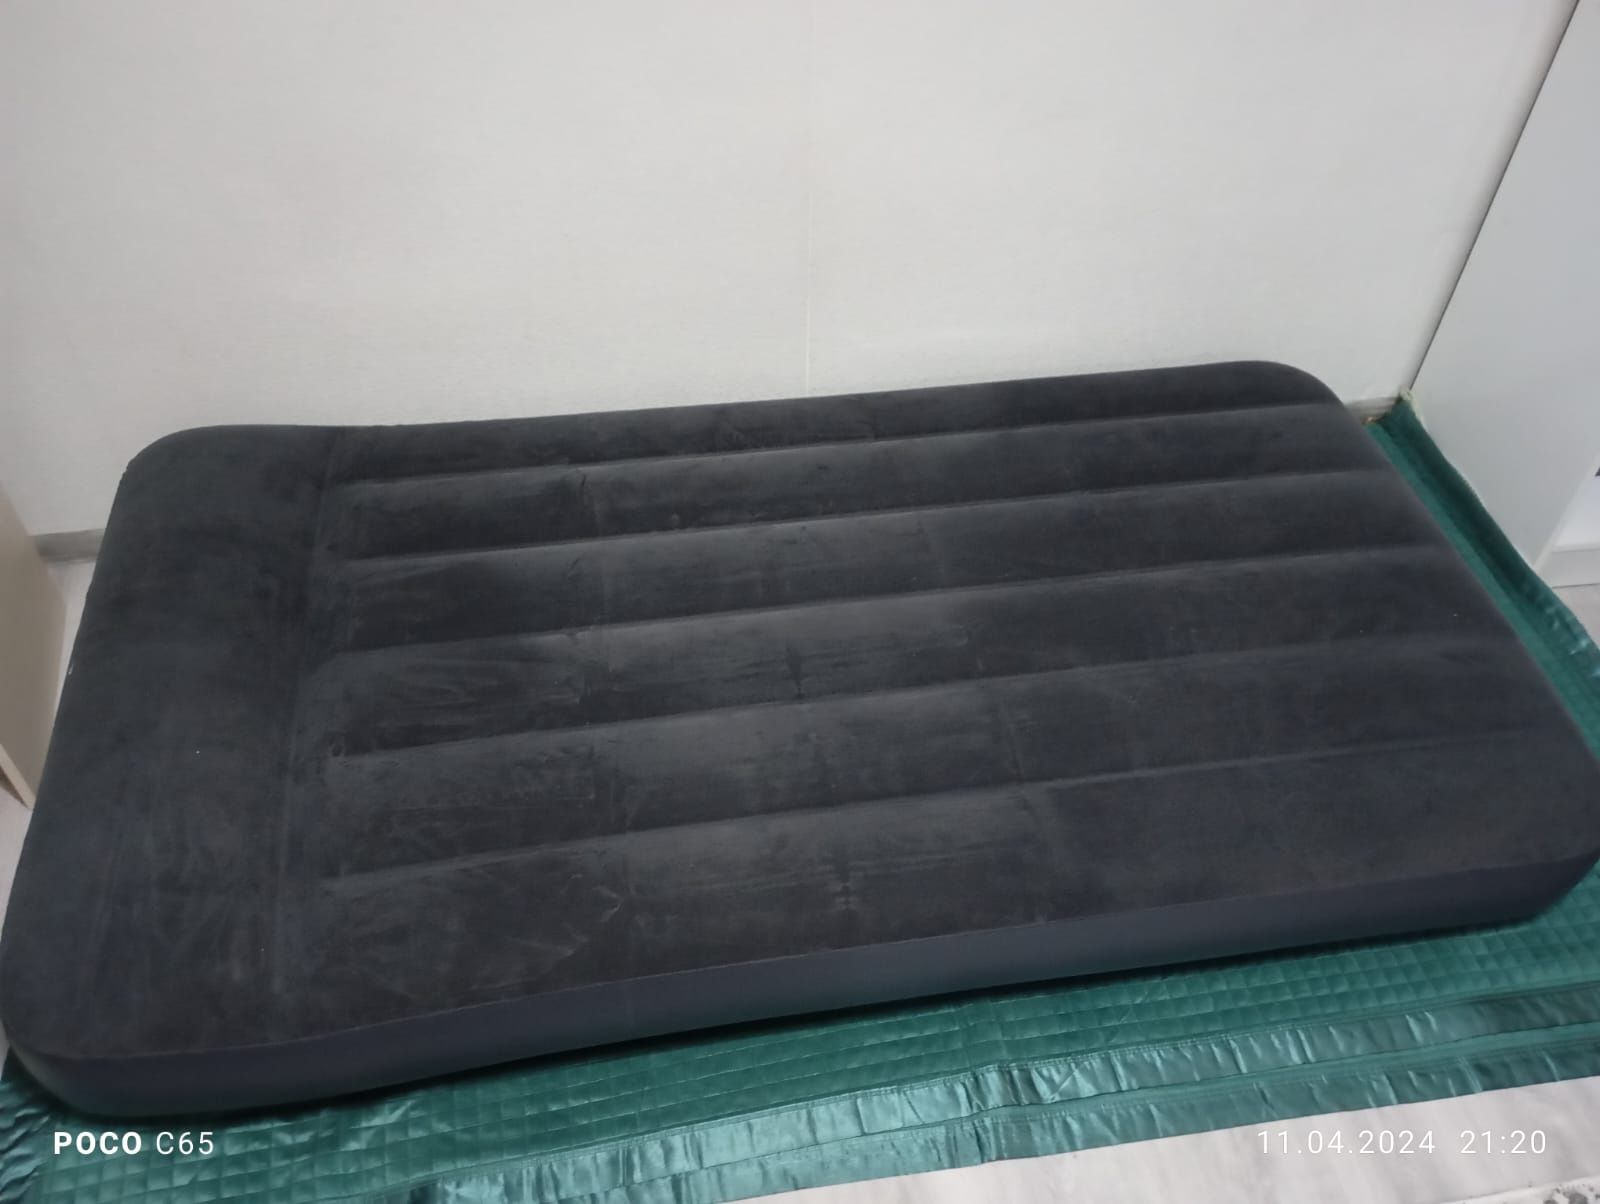 Однаспальный надувной матрац.новый, размер 99 см*191 м*25 см.